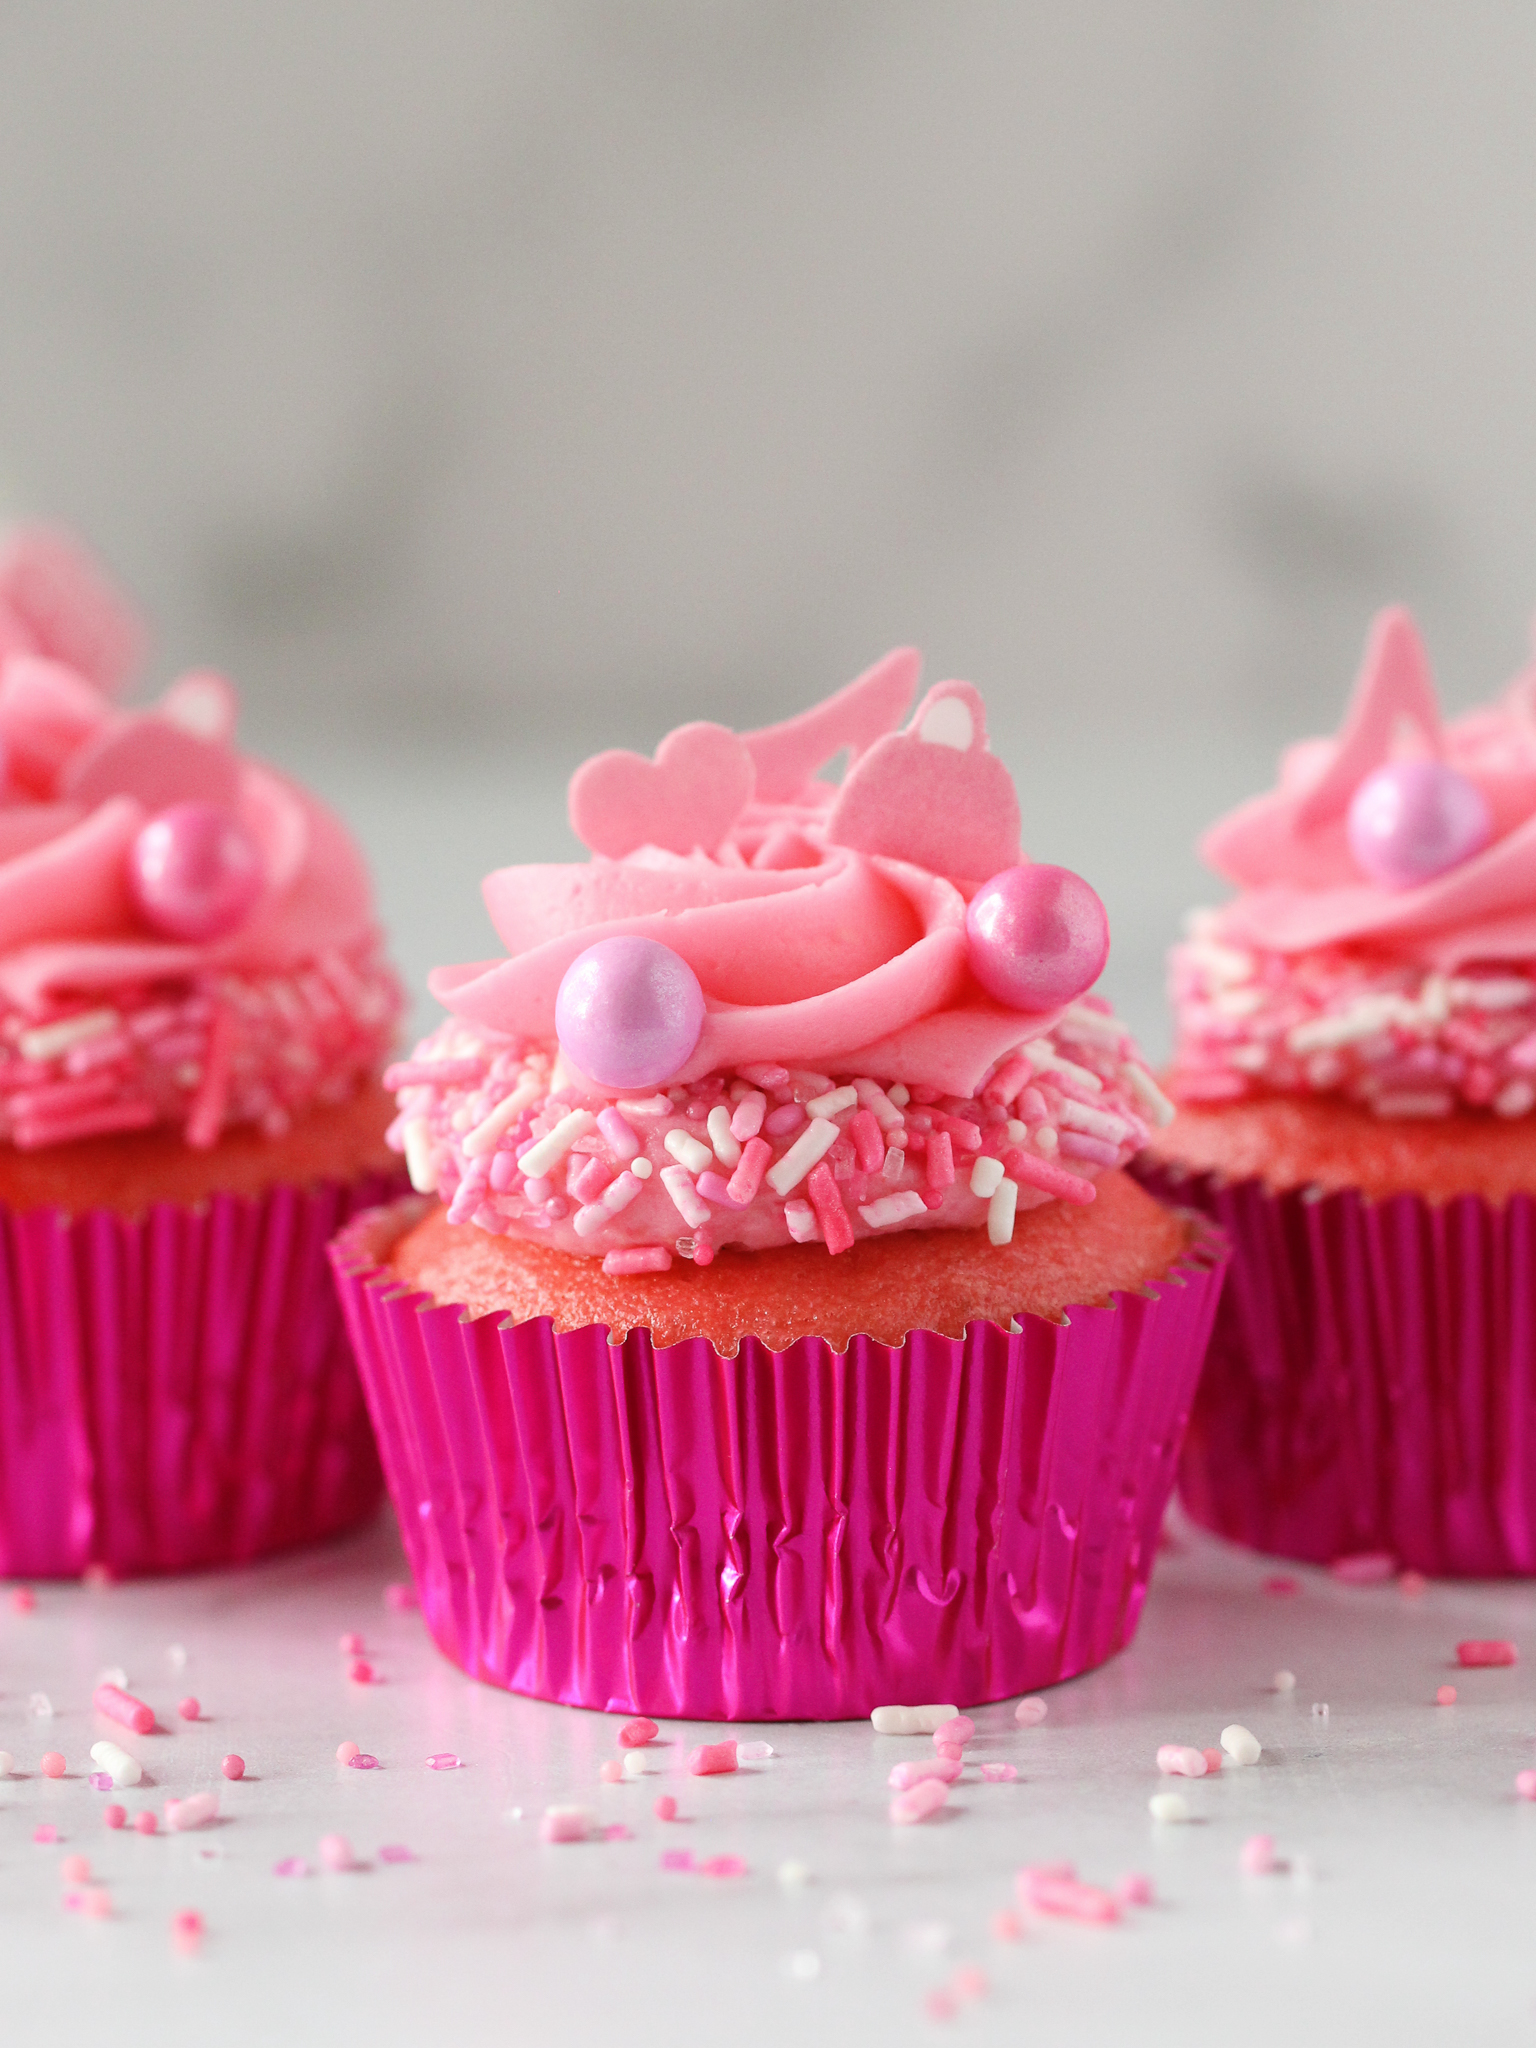 Barbie-Inspired Cupcakes - Life & Sprinkles by Taryn Camp